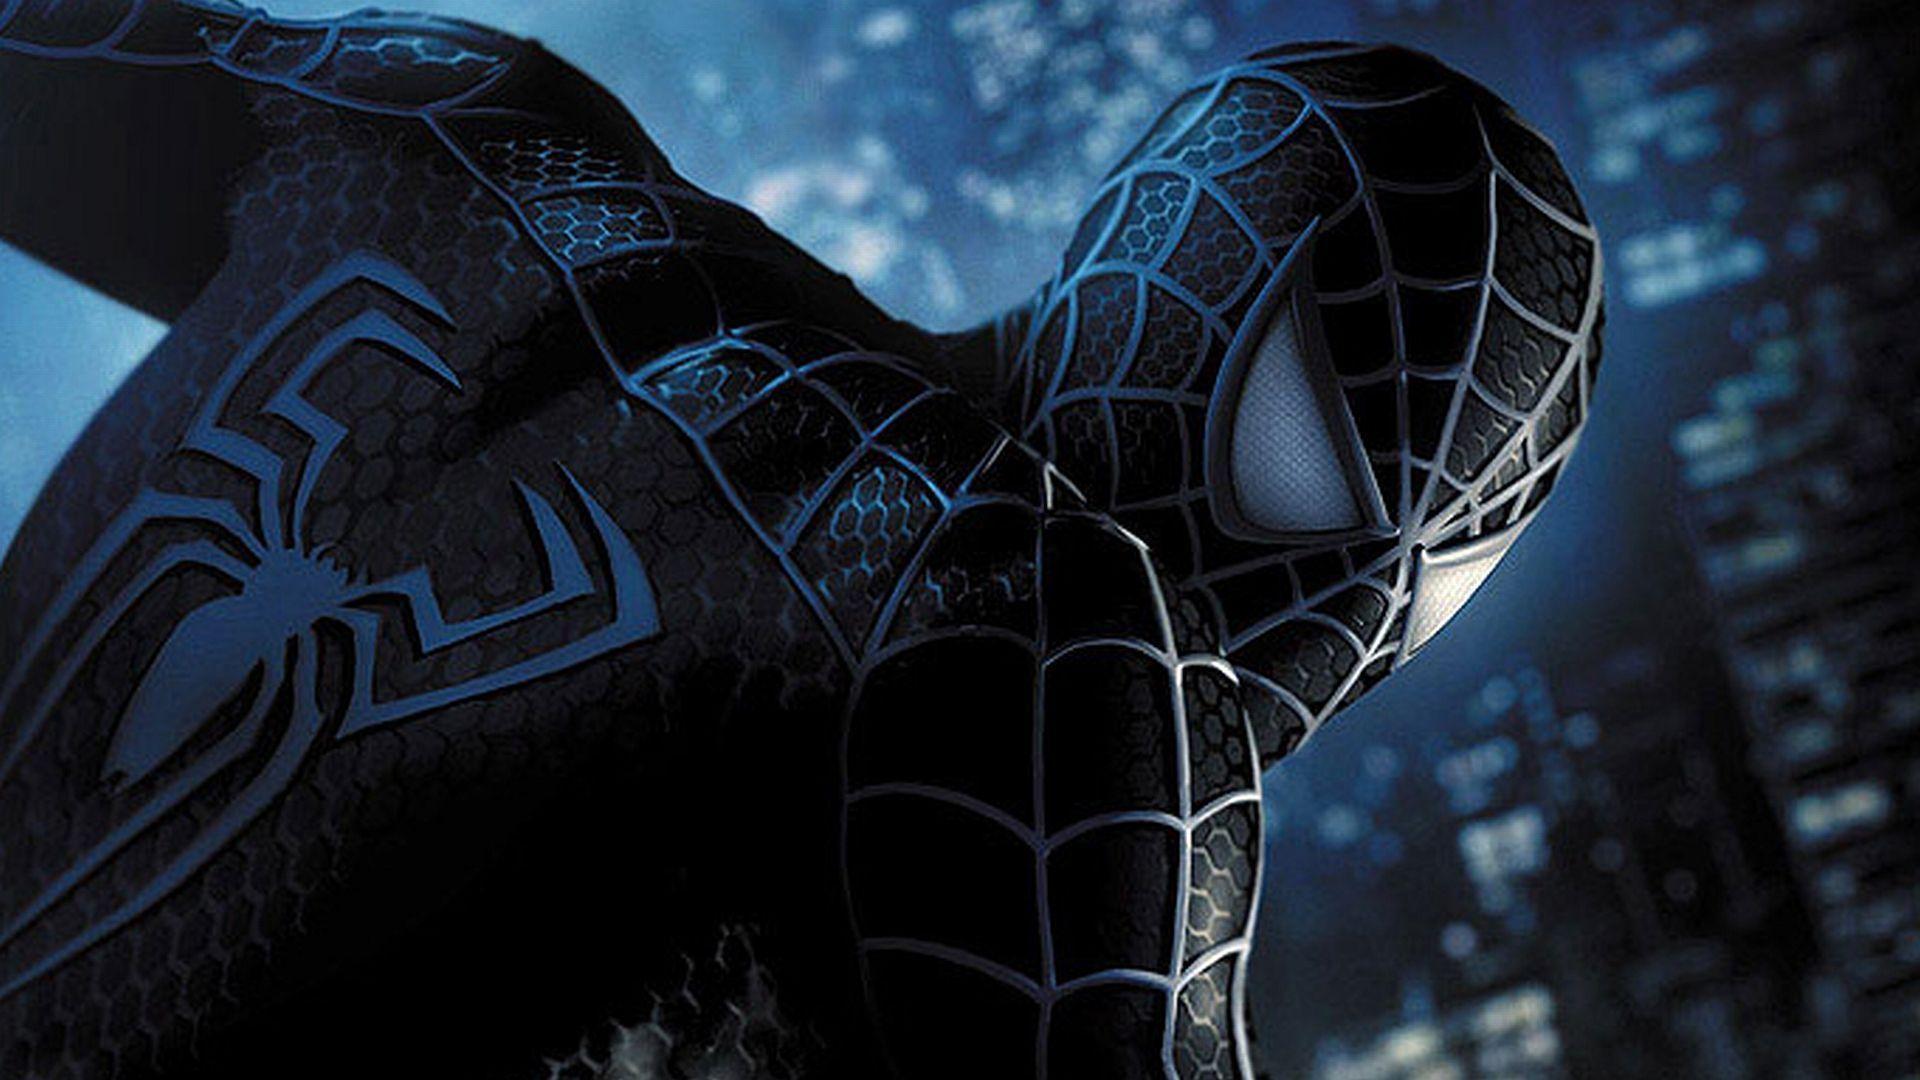 Spider-Man Kulit Hitam Ini Siap Debut Film di 2018